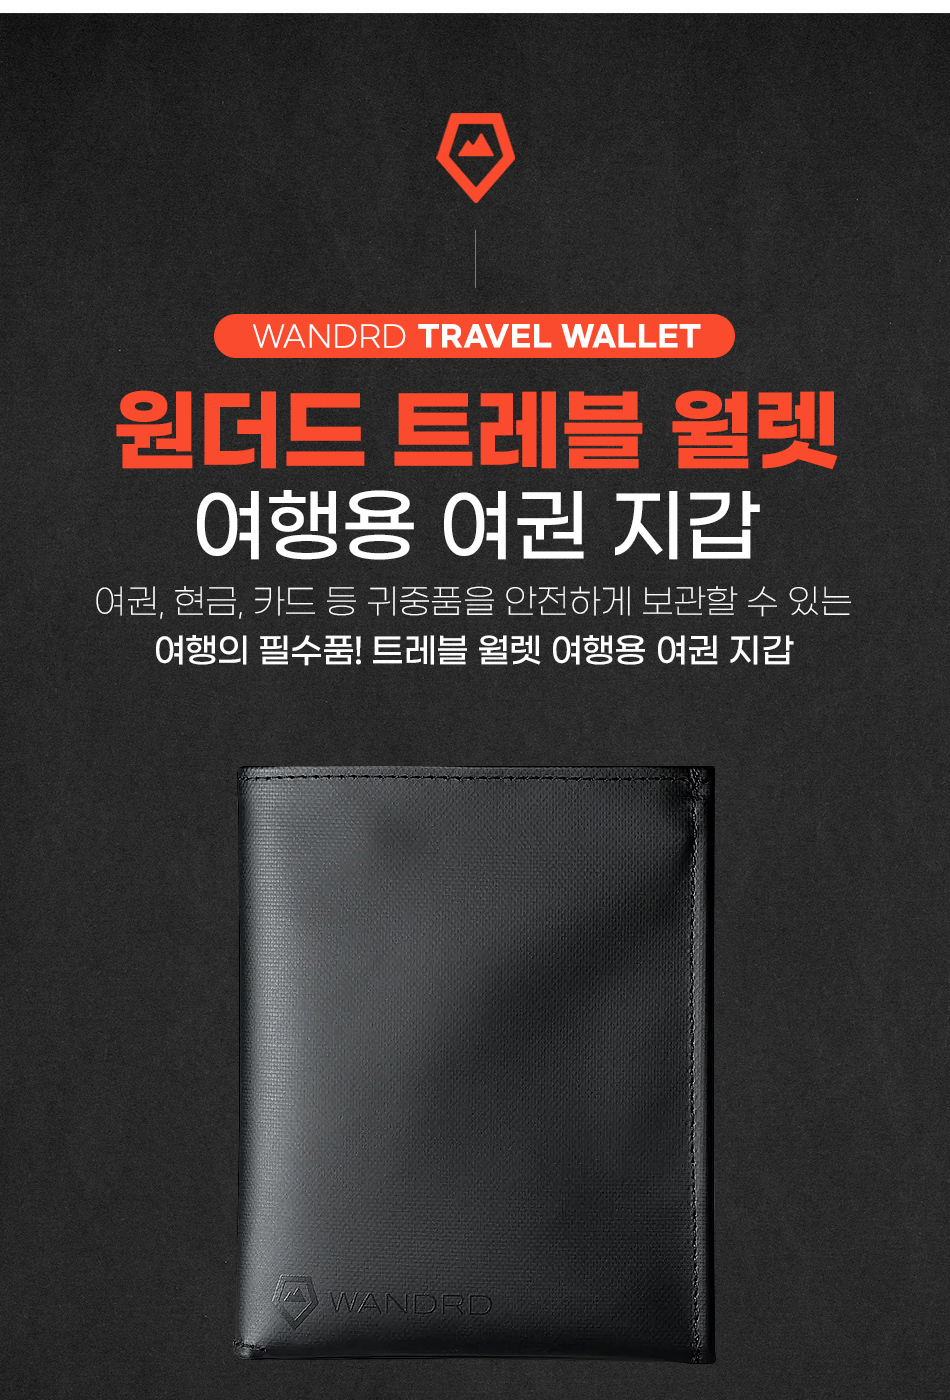 travel_wallet_01.jpg